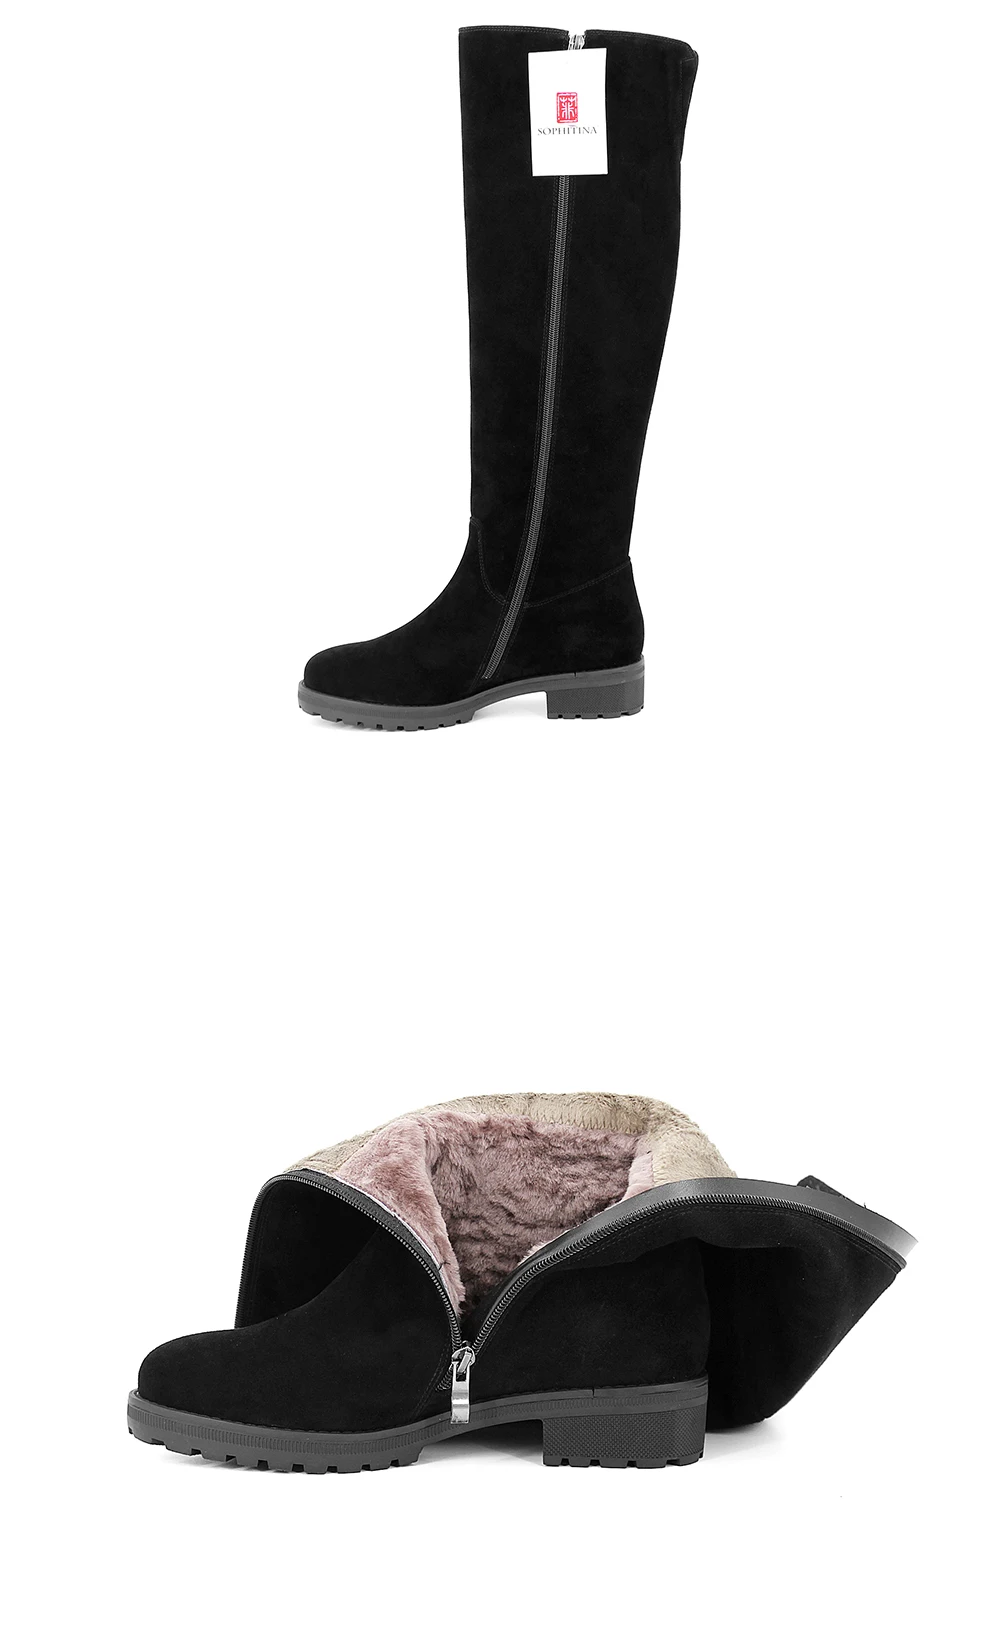 SOPHITINA/Сапоги женские из натуральной замши черного цвета. Зимние женские сапоги на ворсине и натуральном мехе. Верх этой модели выполнен в лаконичном дизайне. Женская обувь на зиму 2019г. на толстой подошве. B32